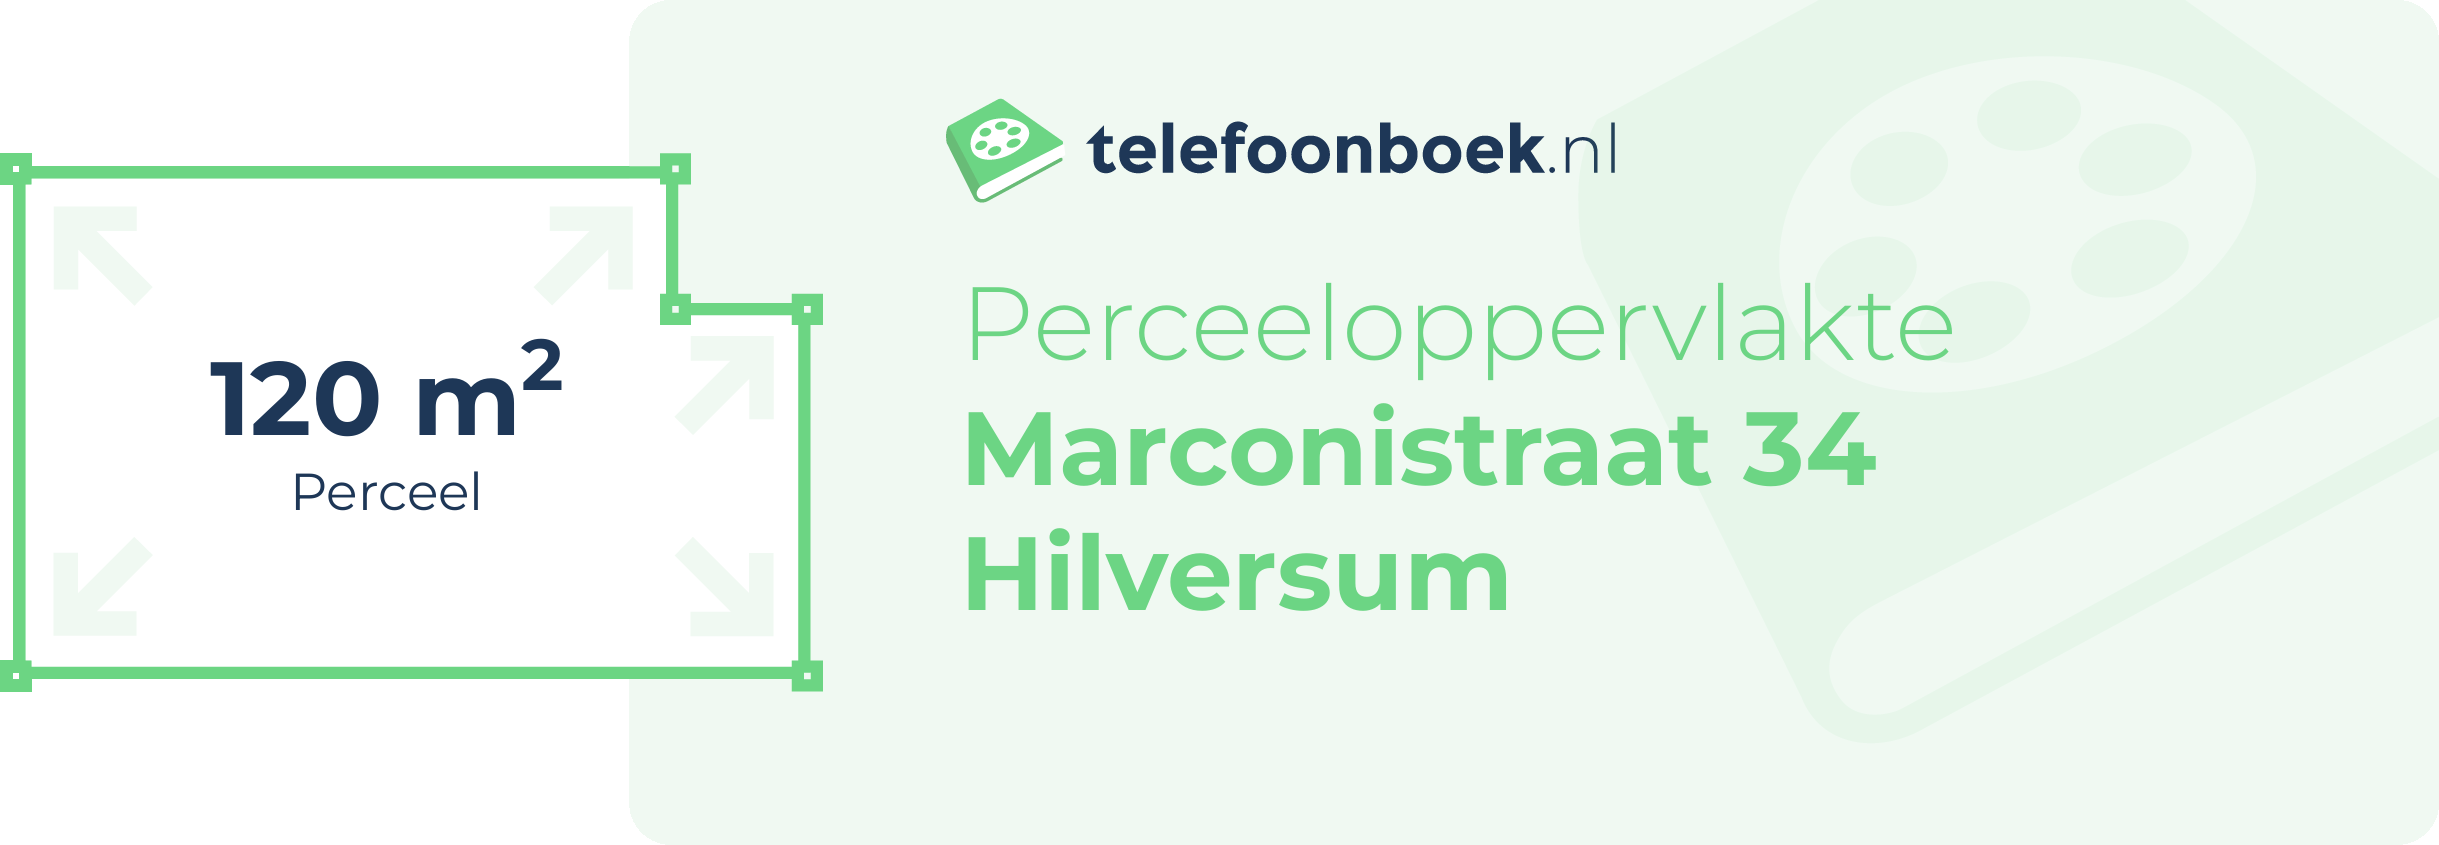 Perceeloppervlakte Marconistraat 34 Hilversum